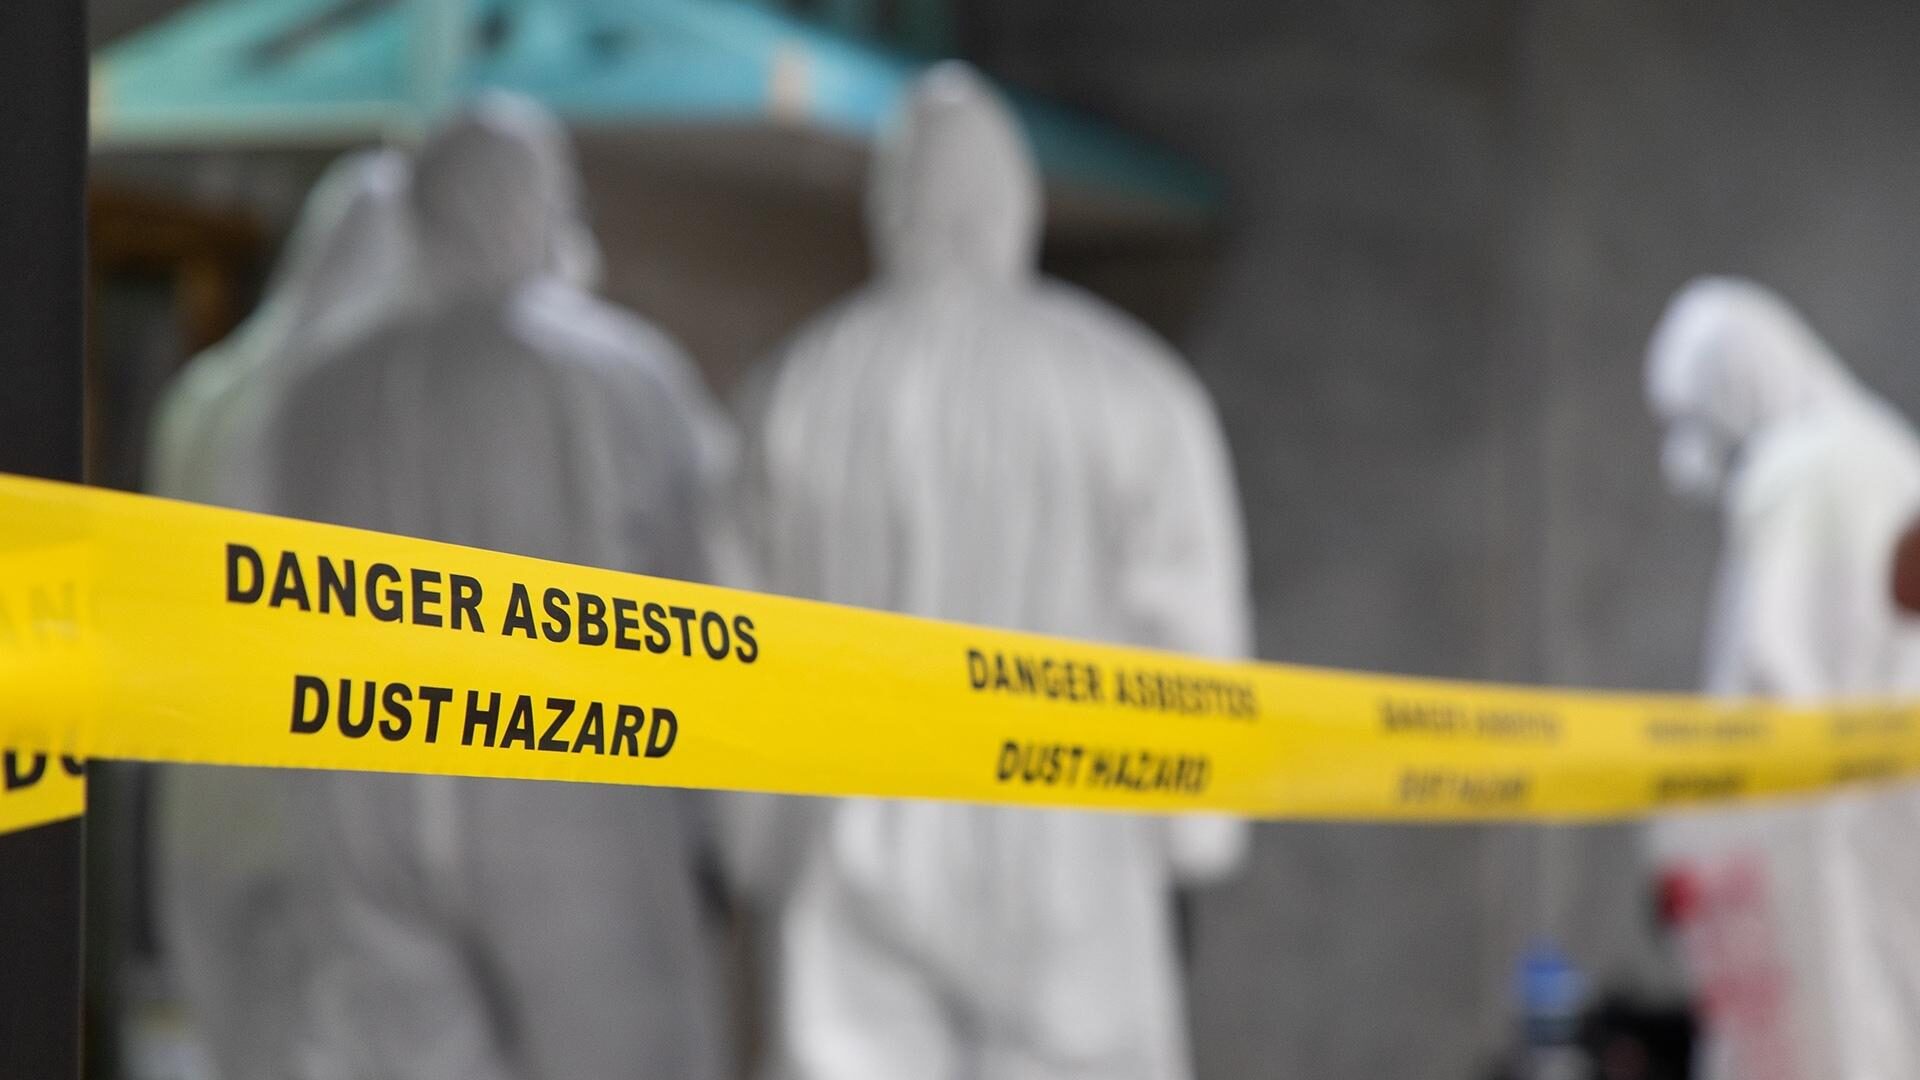 Workers in PPE behind "danger asbestos" warning tape.